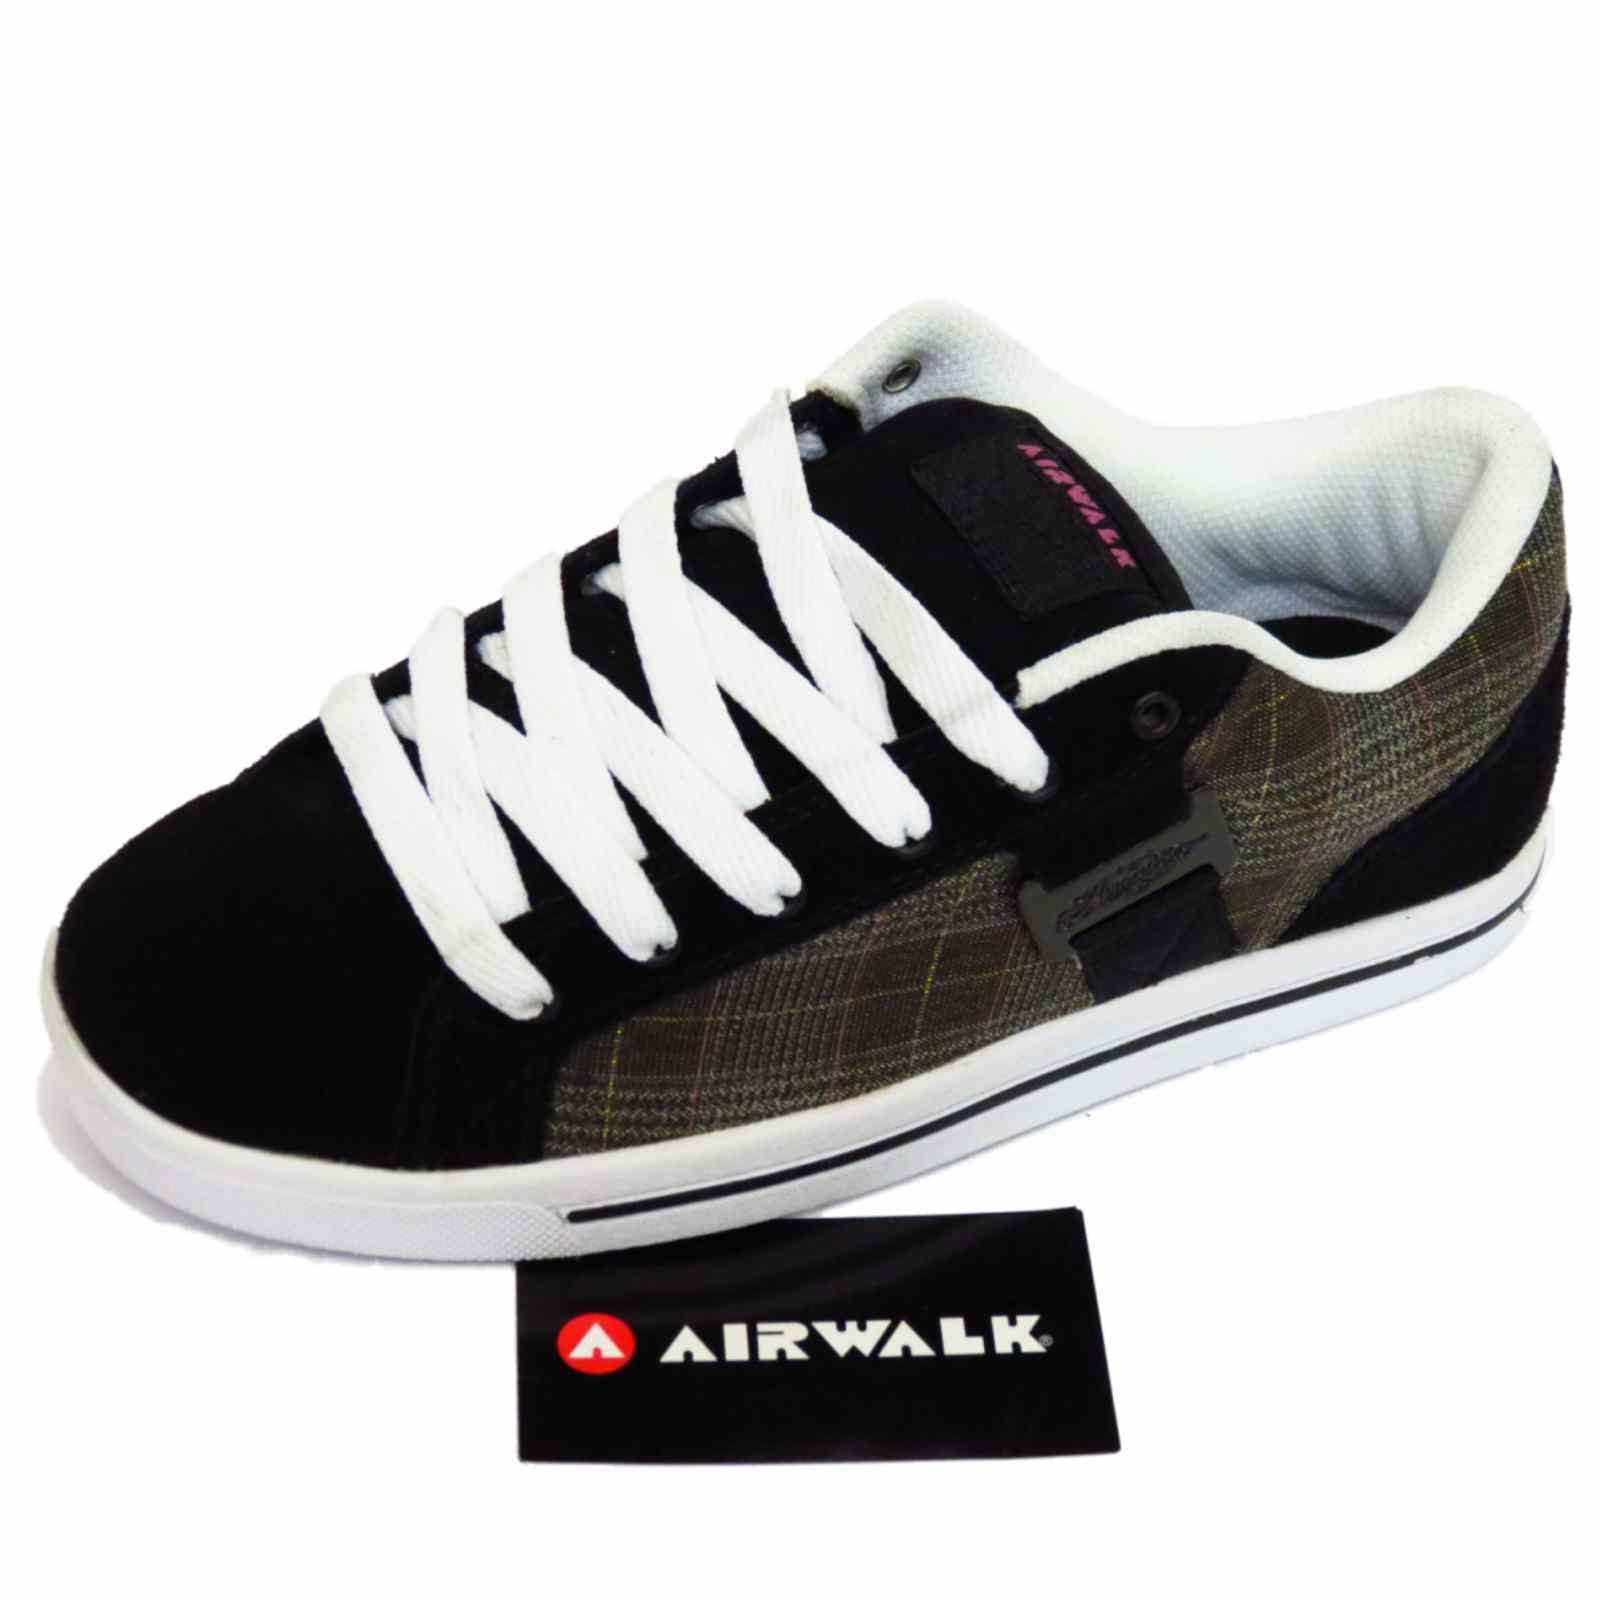 black airwalk trainers